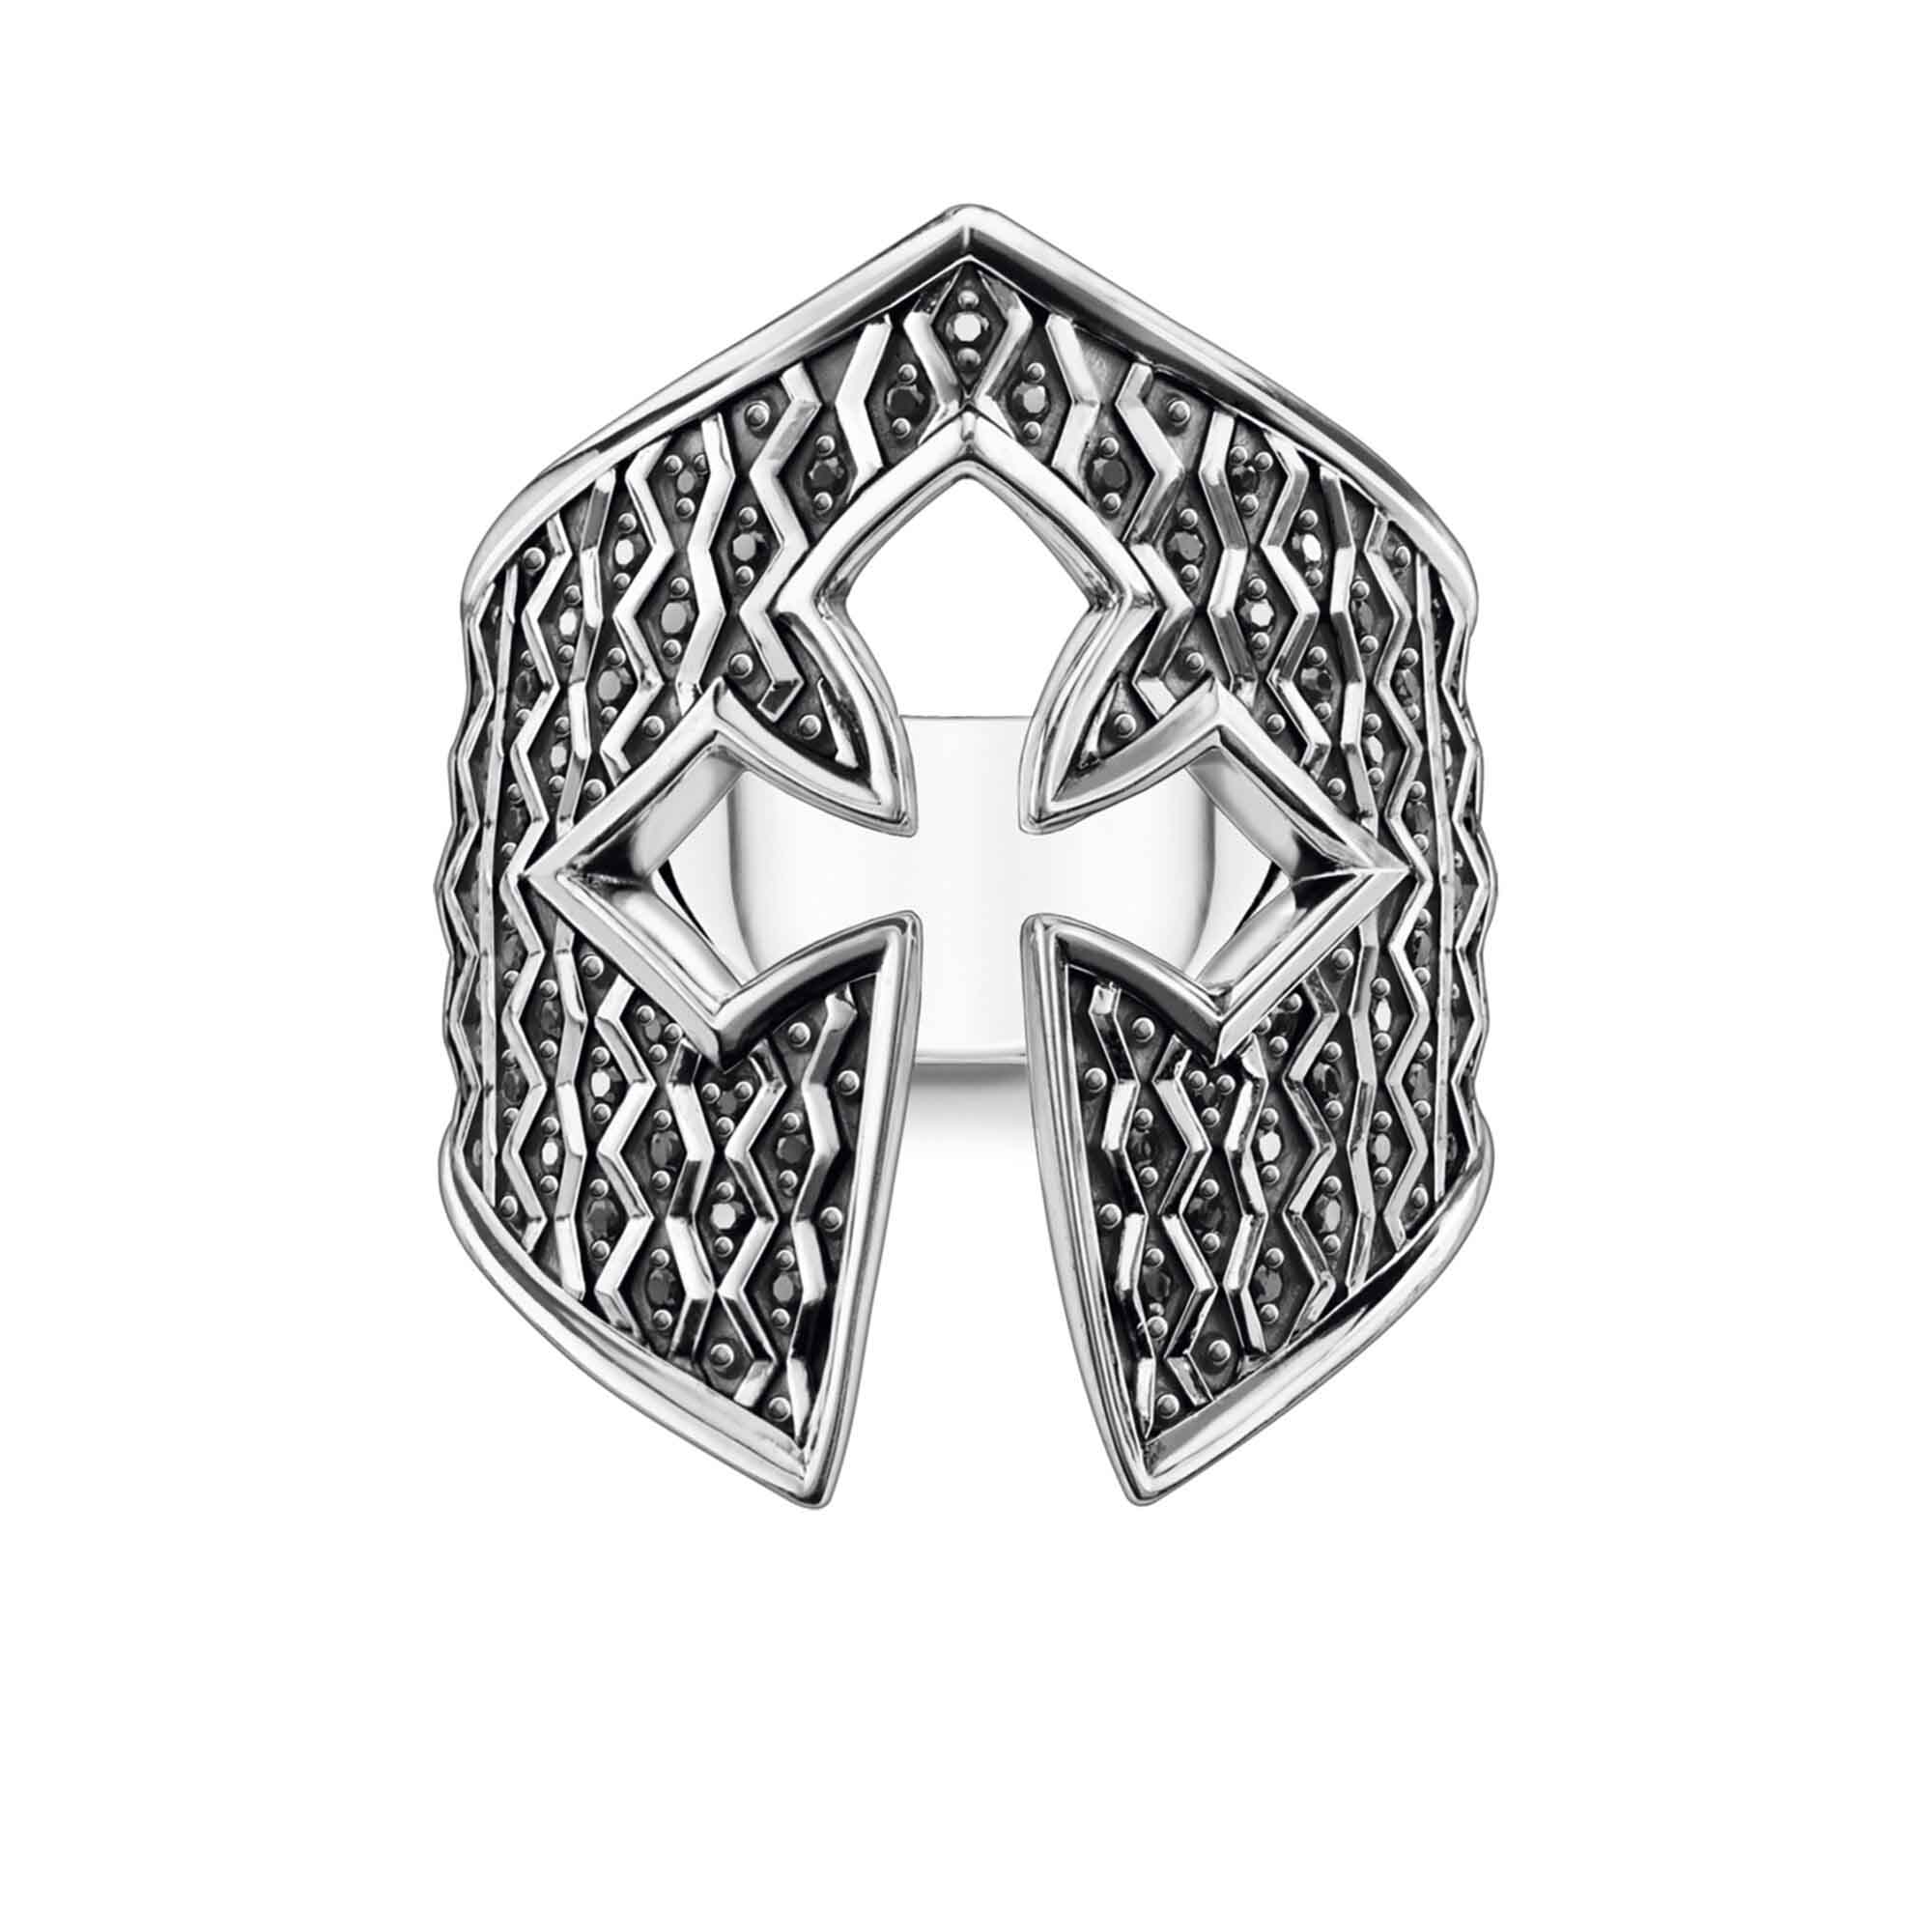 Anello da uomo personalizzato all'ingrosso nel design del casco per gioielli OEM / ODM del cavaliere realizzato in fabbrica OEM in argento sterling 925